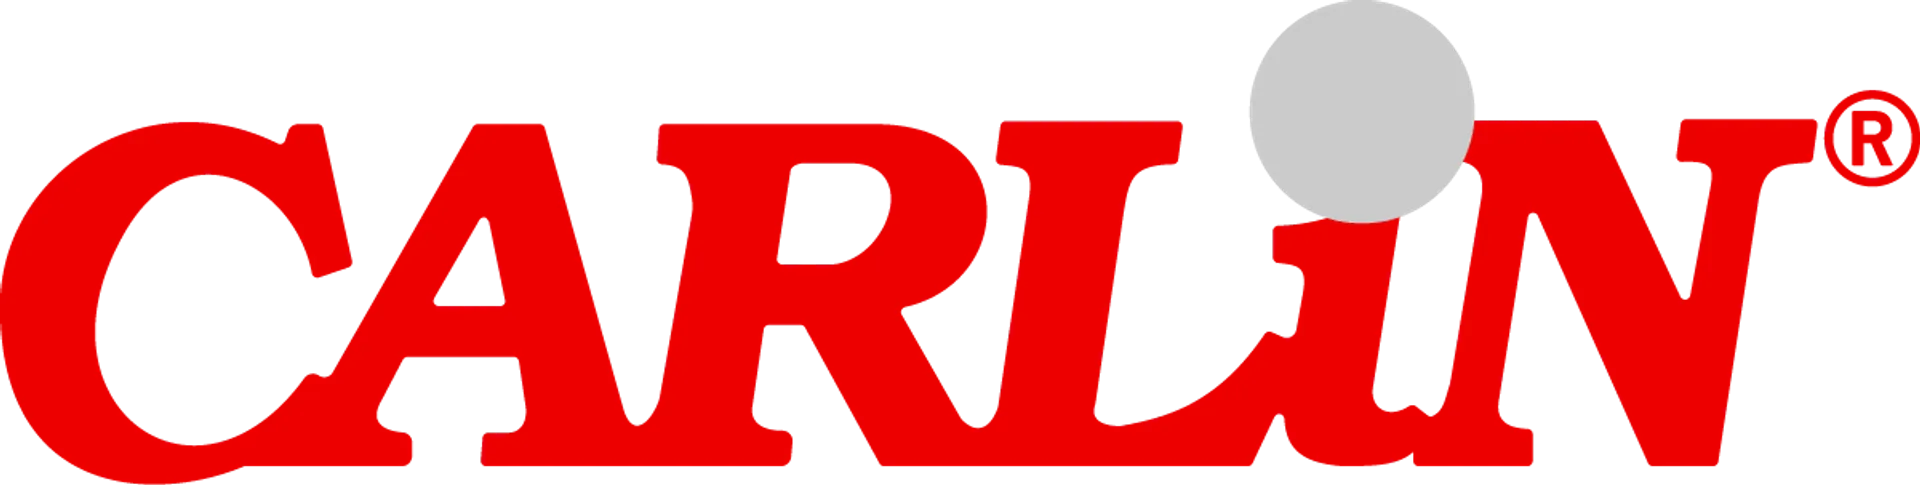 CARLIN logo